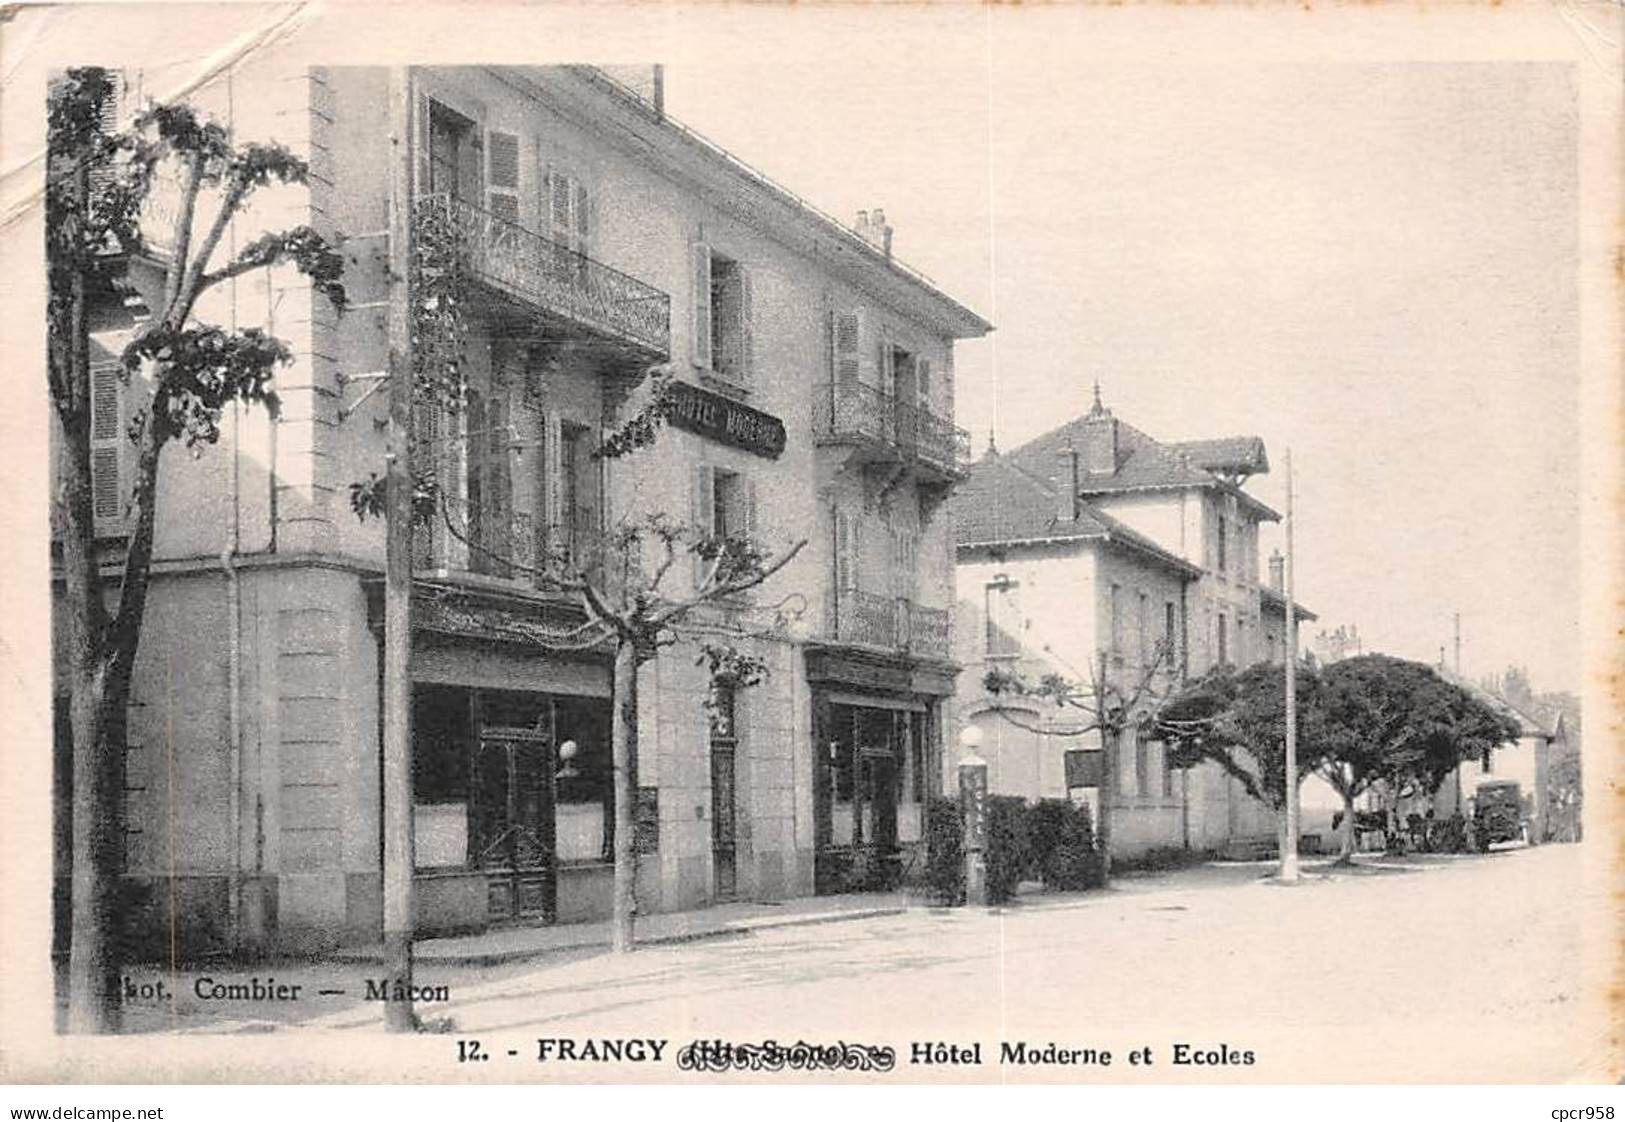 74 - FRANGY - SAN34968 - Hôtel Moderne Et Ecoles - Pli - Frangy